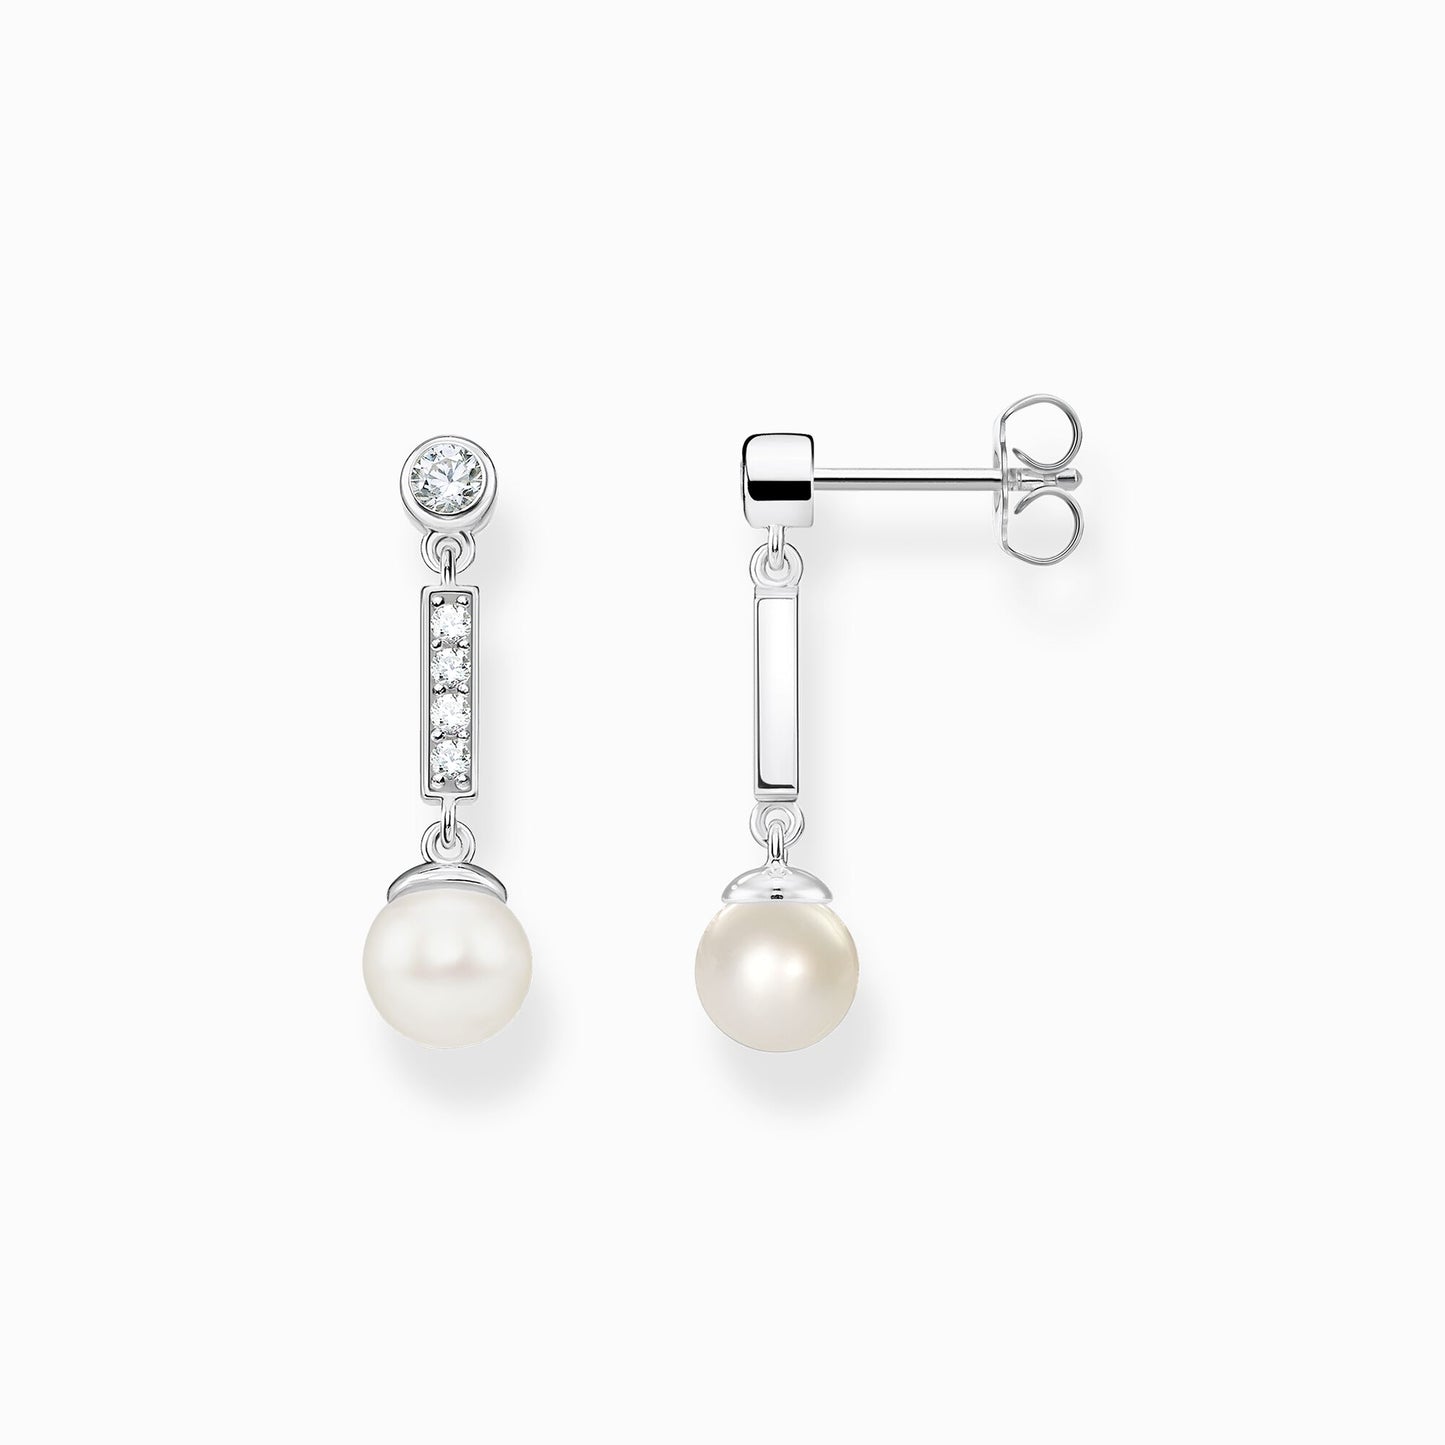 Pearl earrings H2092-167-14